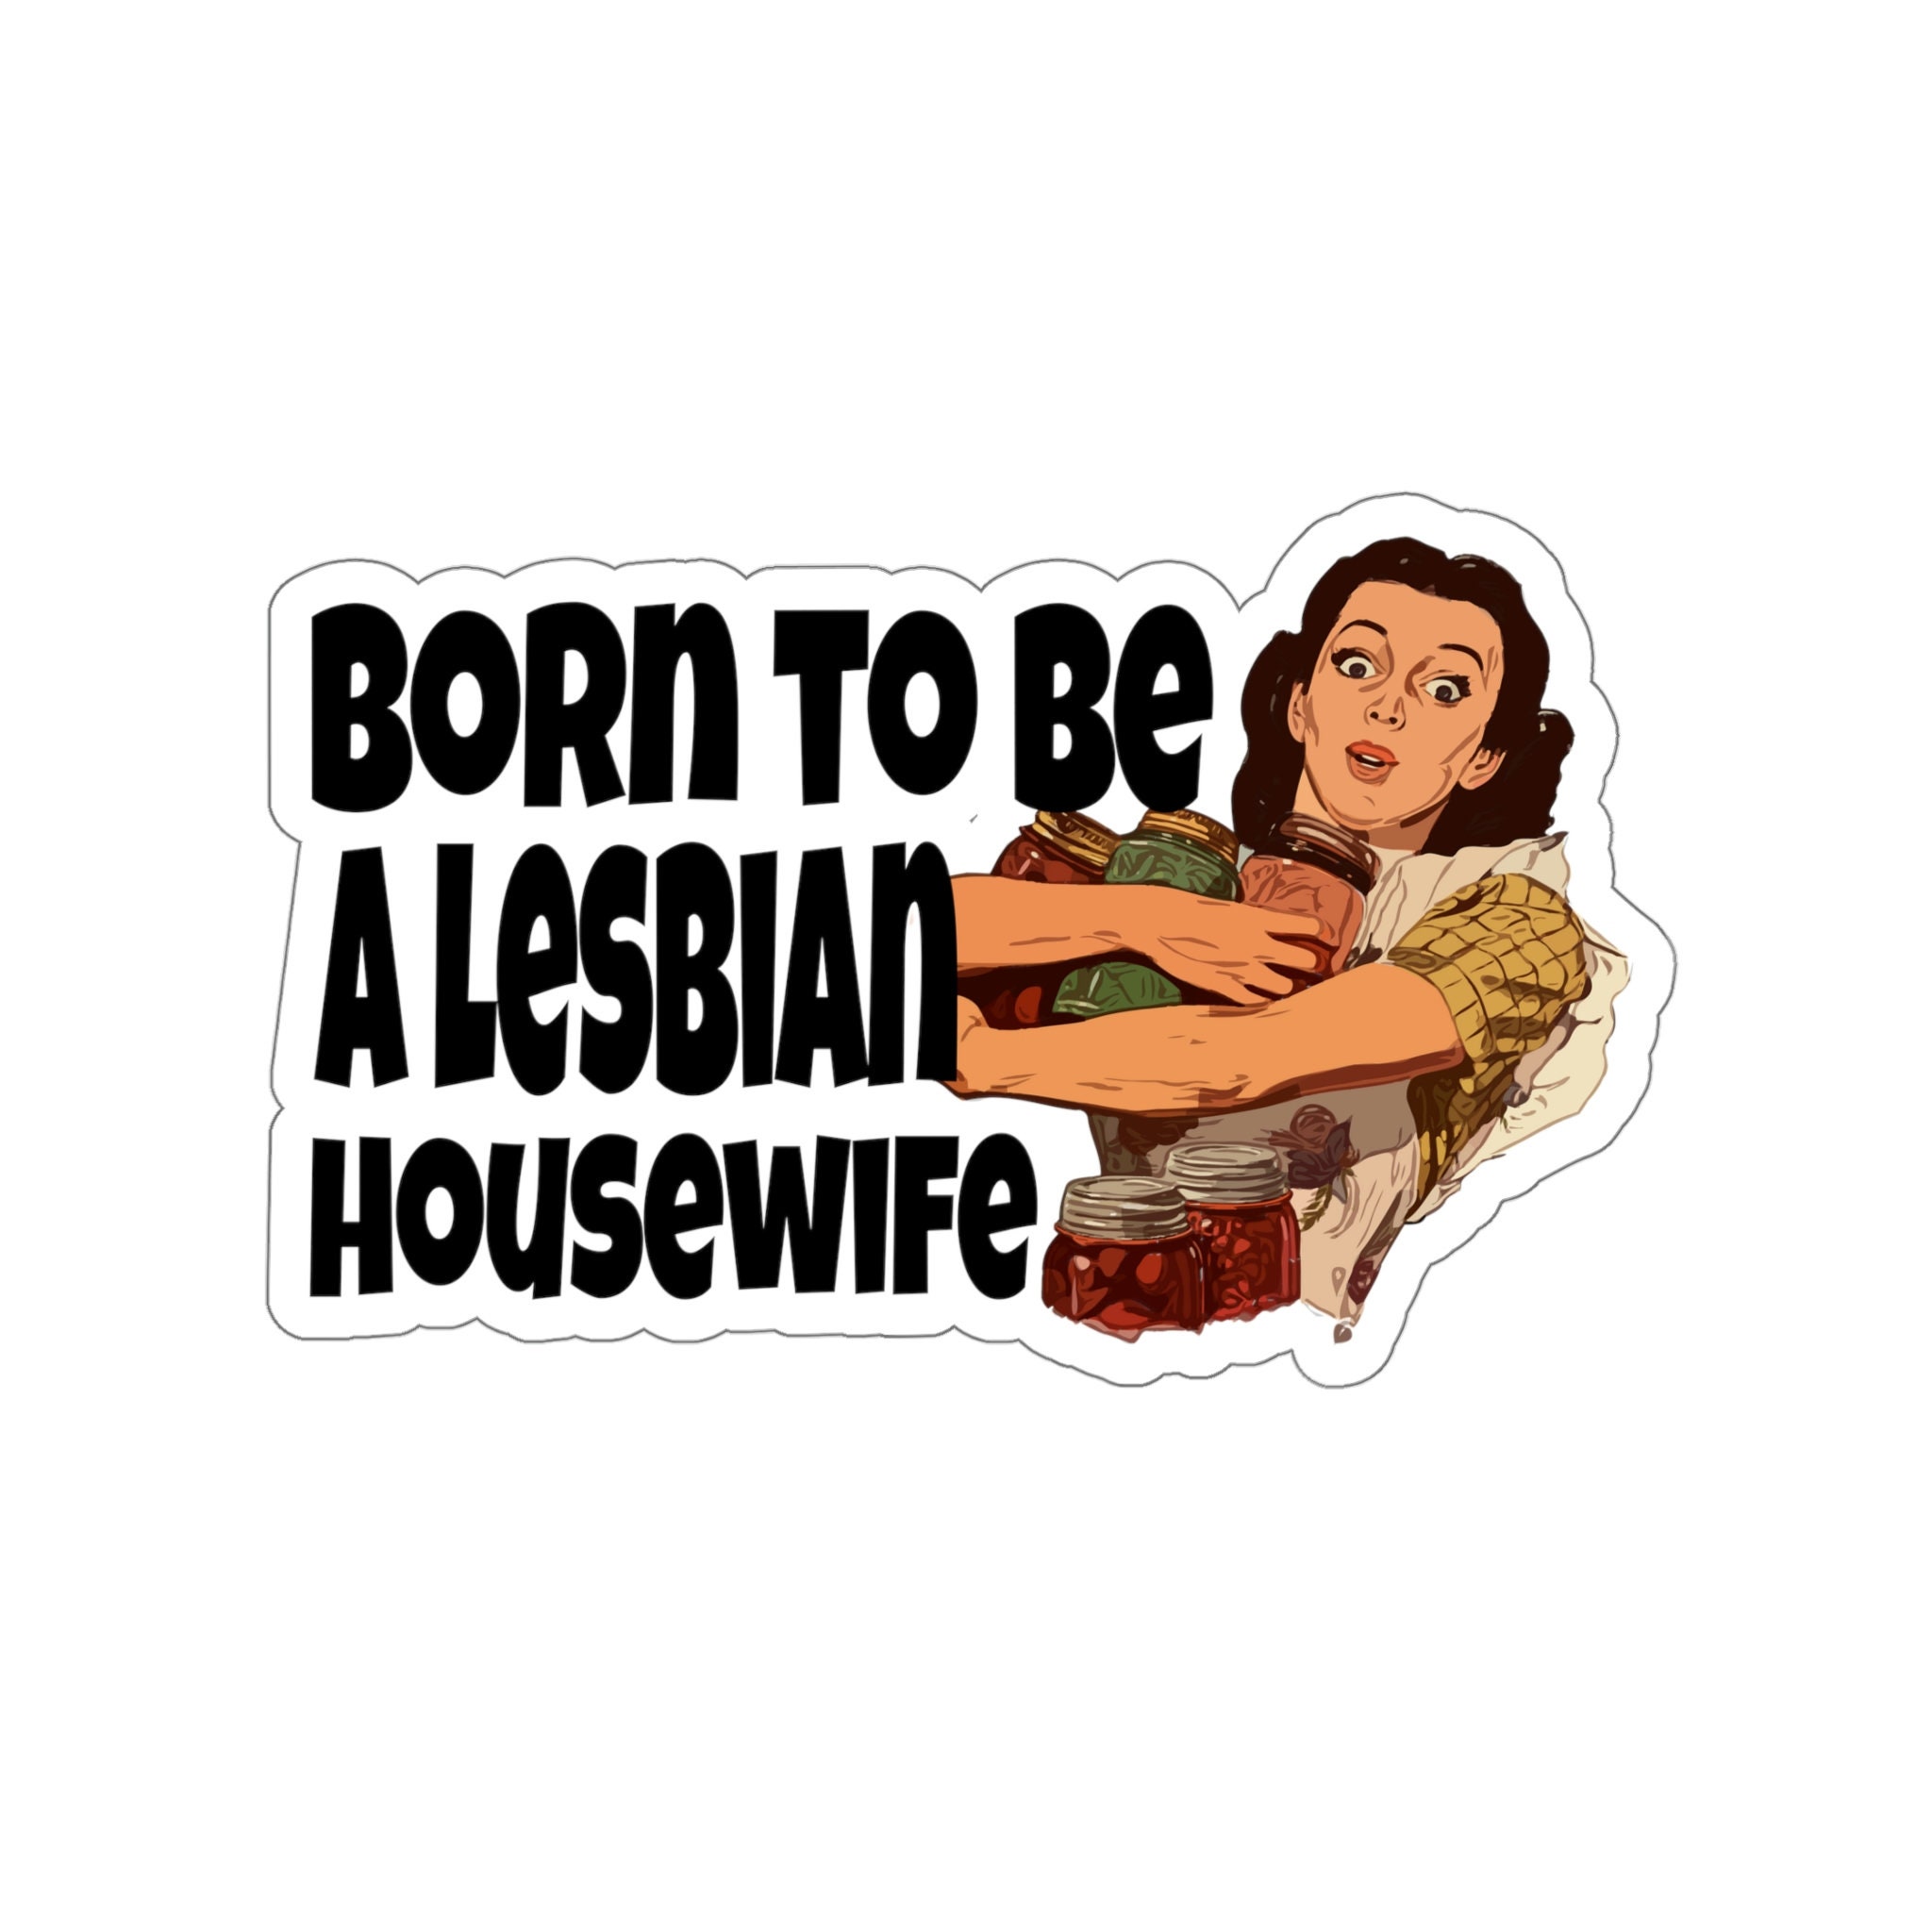 lesbian housewife books rm bali